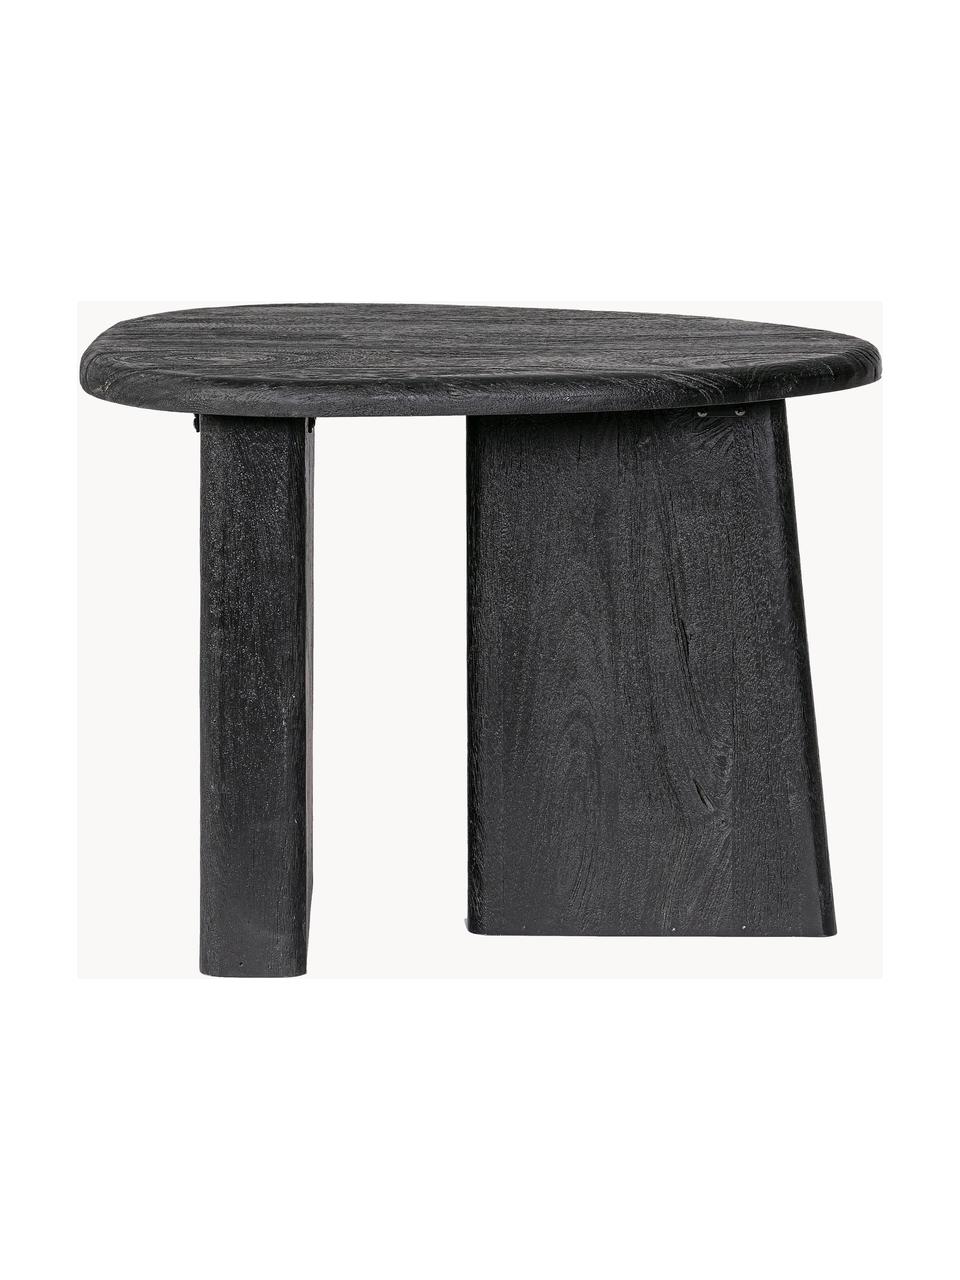 Oválný konferenční stolek z mangového dřeva Zacatecas, Mangové dřevo, Mangové dřevo, lakované černou barvou, Š 60 cm, H 45 cm